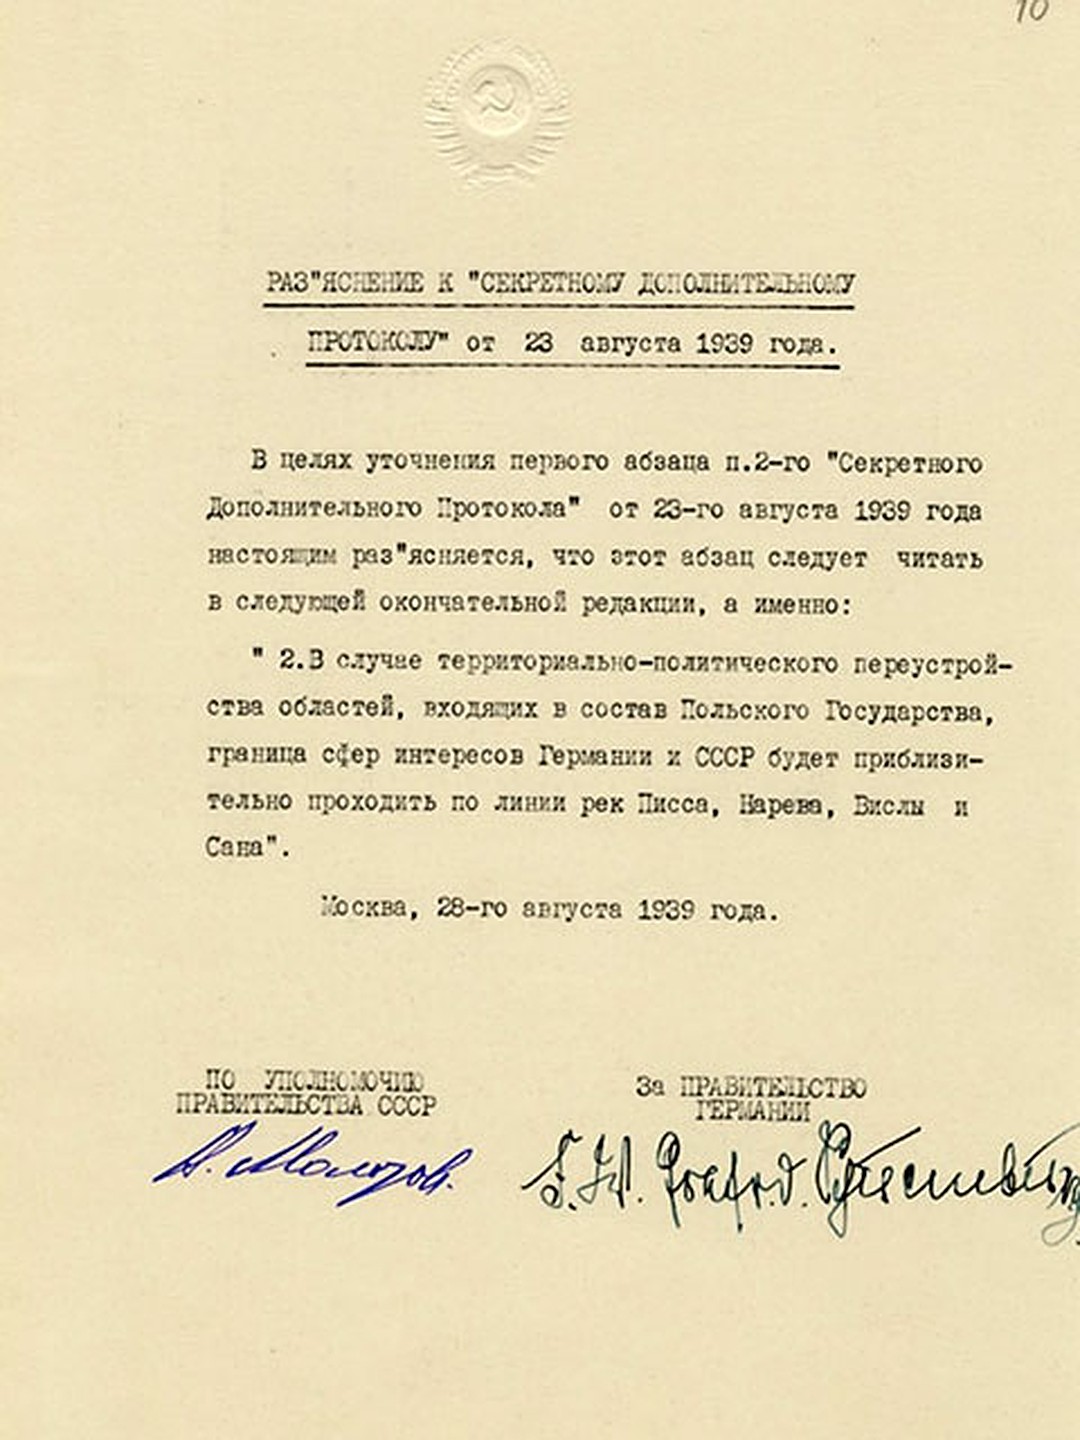 1939 год соглашение. Секретный протокол пакта Молотова-Риббентропа 1939 г 23 августа. Пакт Молотова-Риббентропа секретный протокол оригинал. Документ пакт о ненападении Германии на Советский Союз. Секретный пакт о ненападении между СССР И Германией.